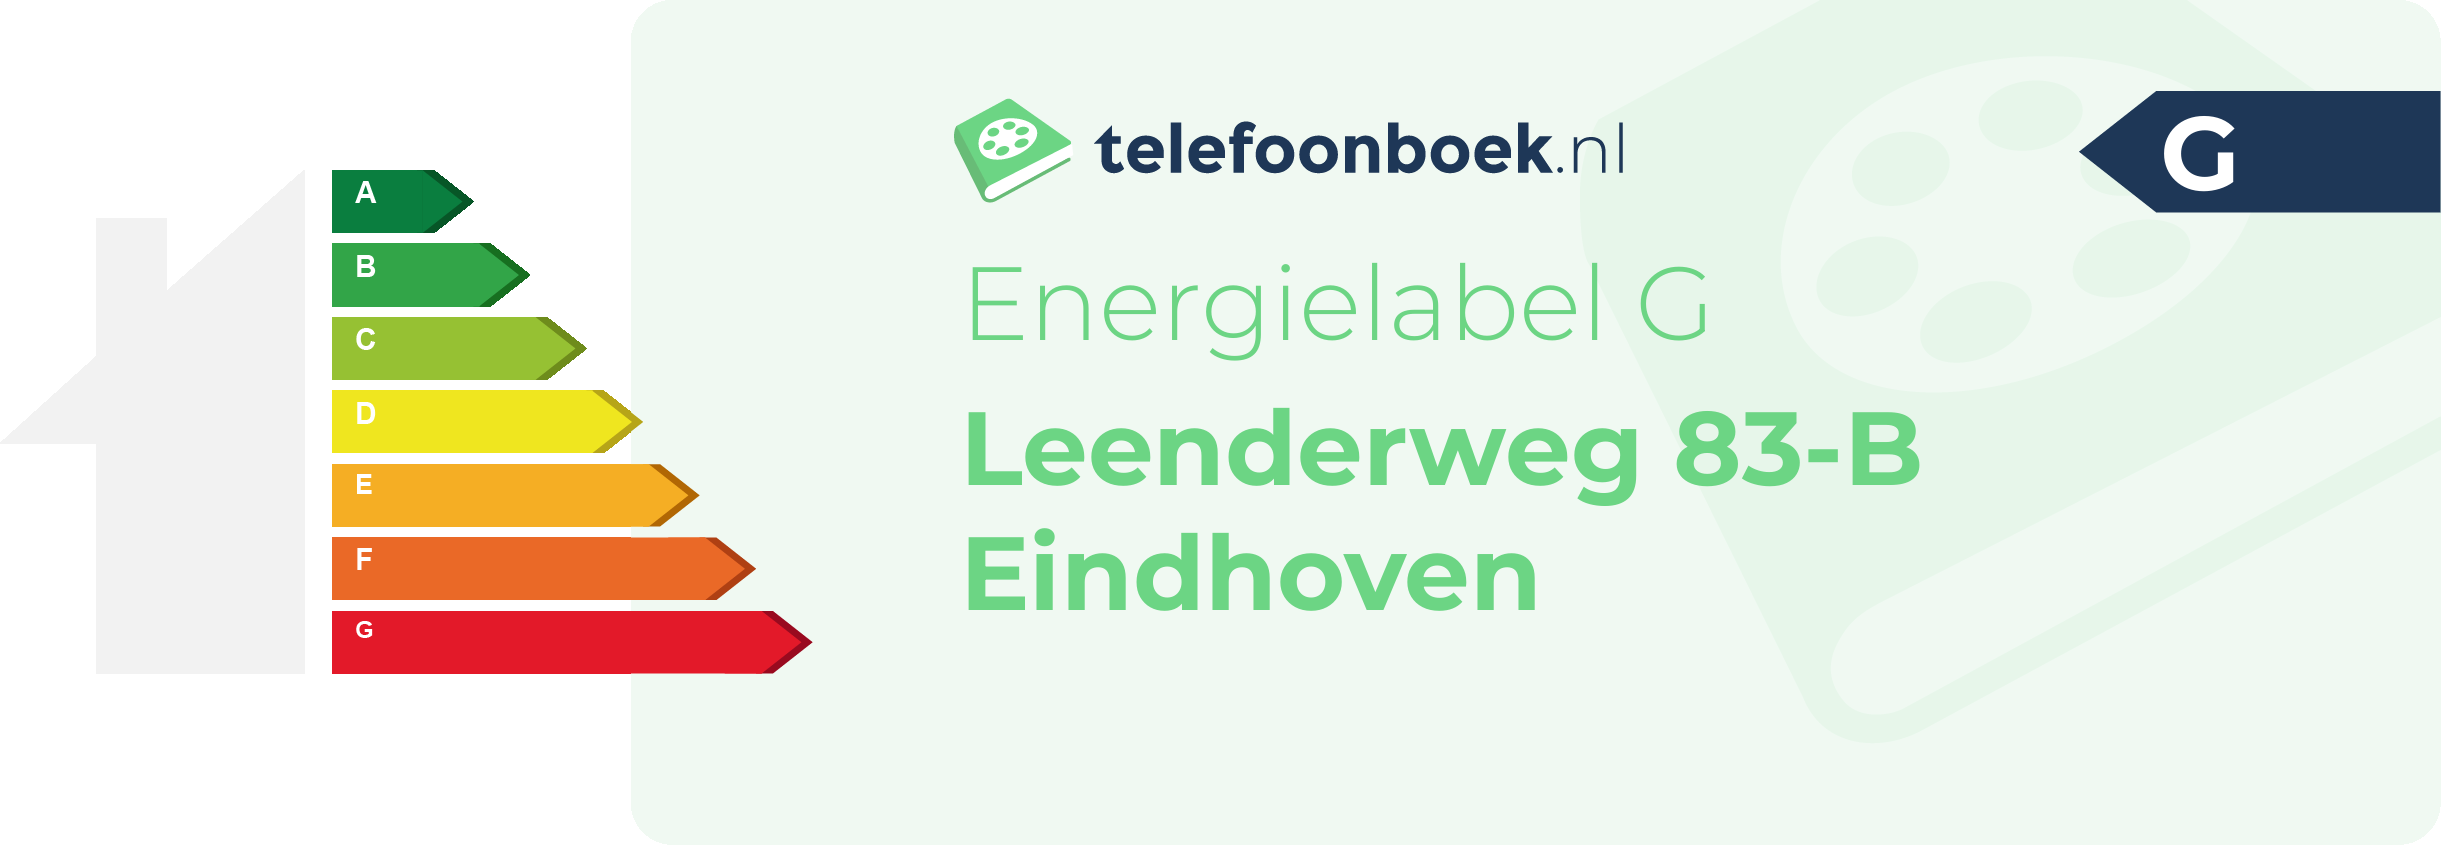 Energielabel Leenderweg 83-B Eindhoven